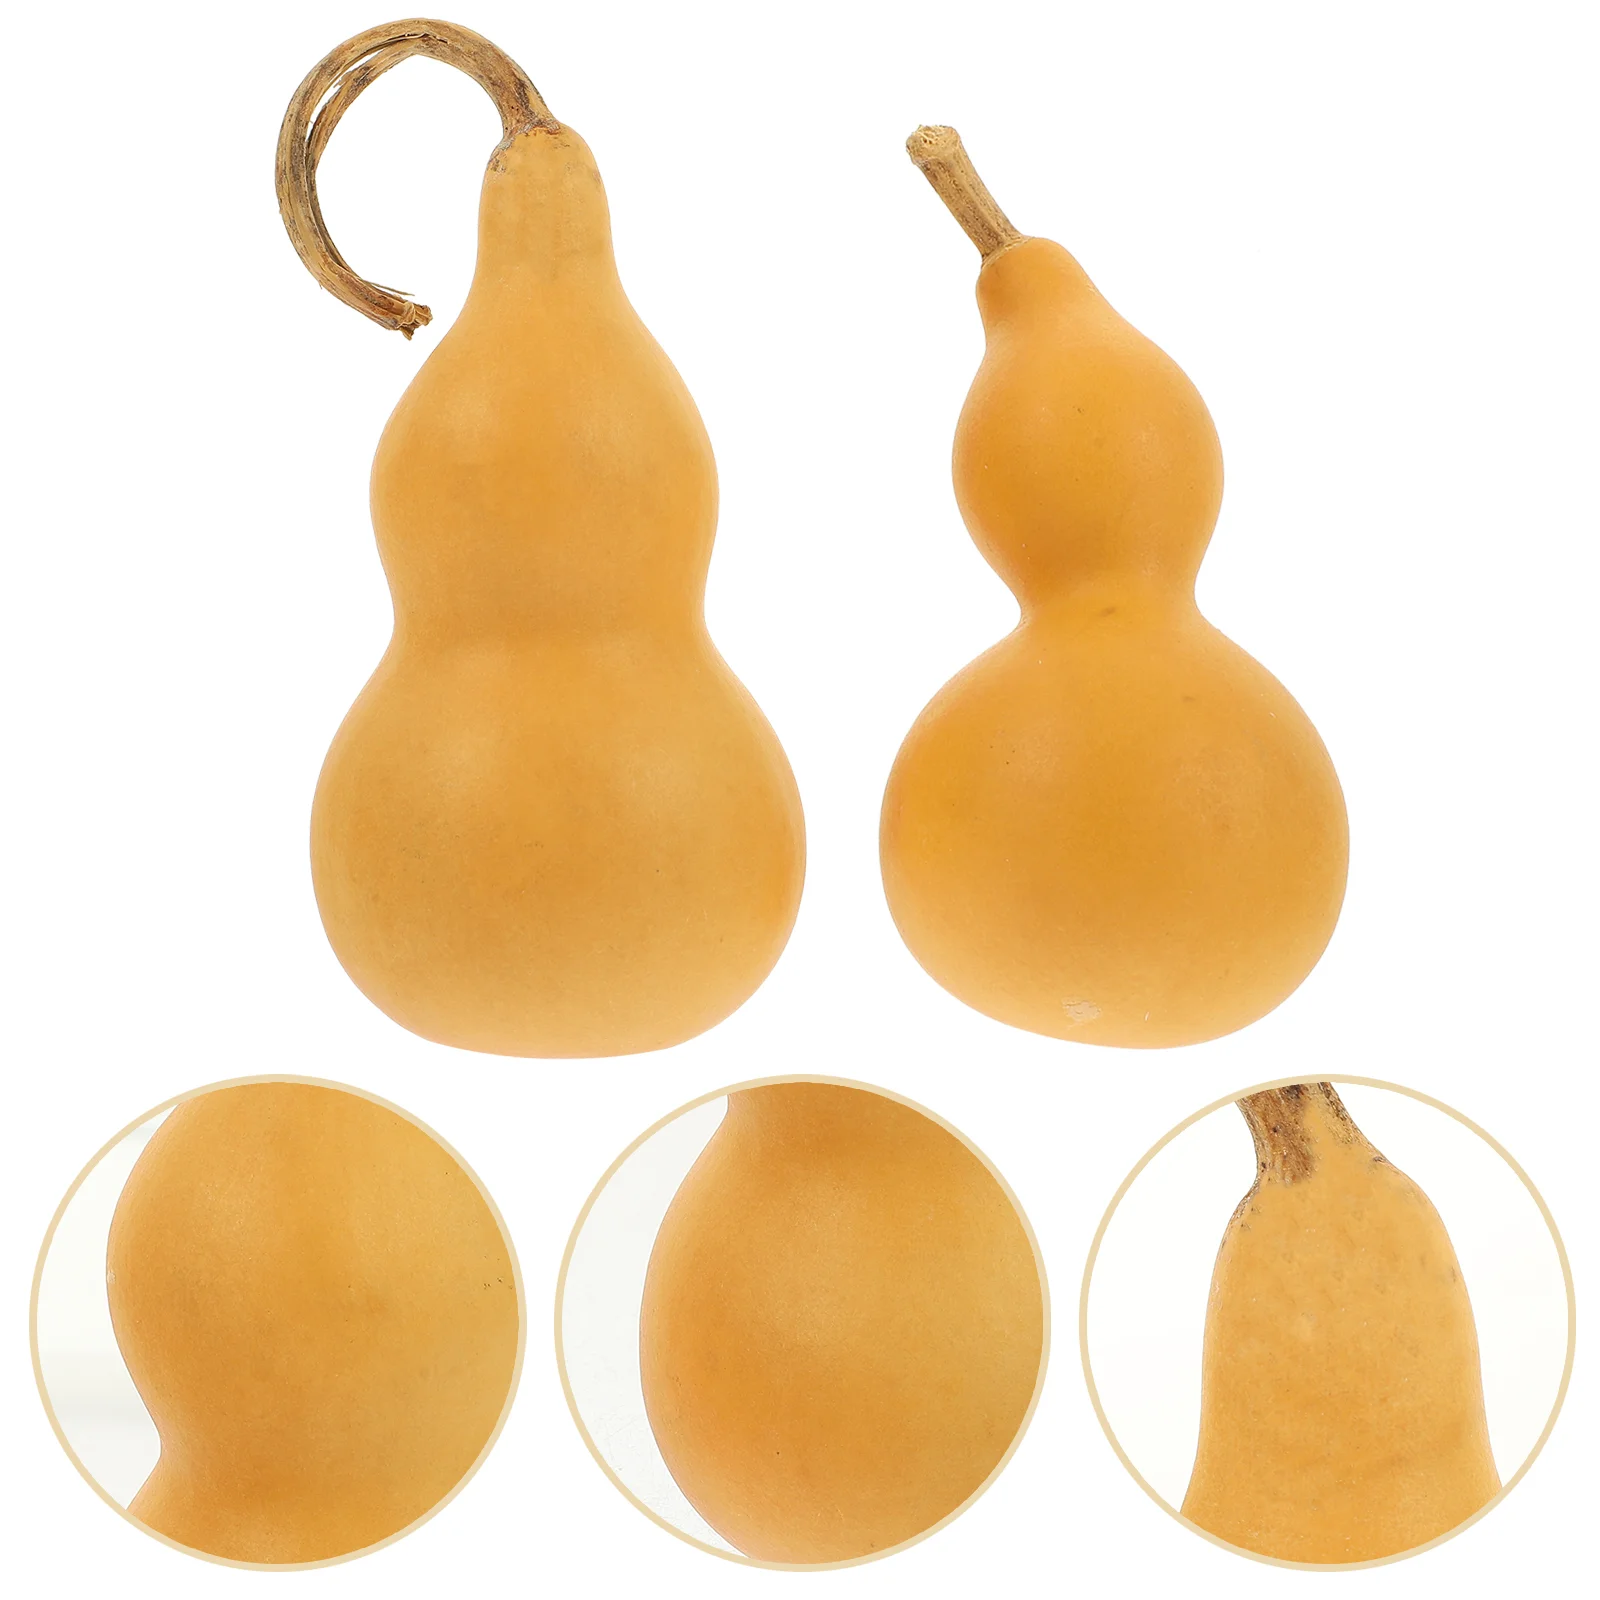 

2 Pcs Water Bottle White Skin Pressed Waist Gourd Desktop Calabash Adornment Household Child